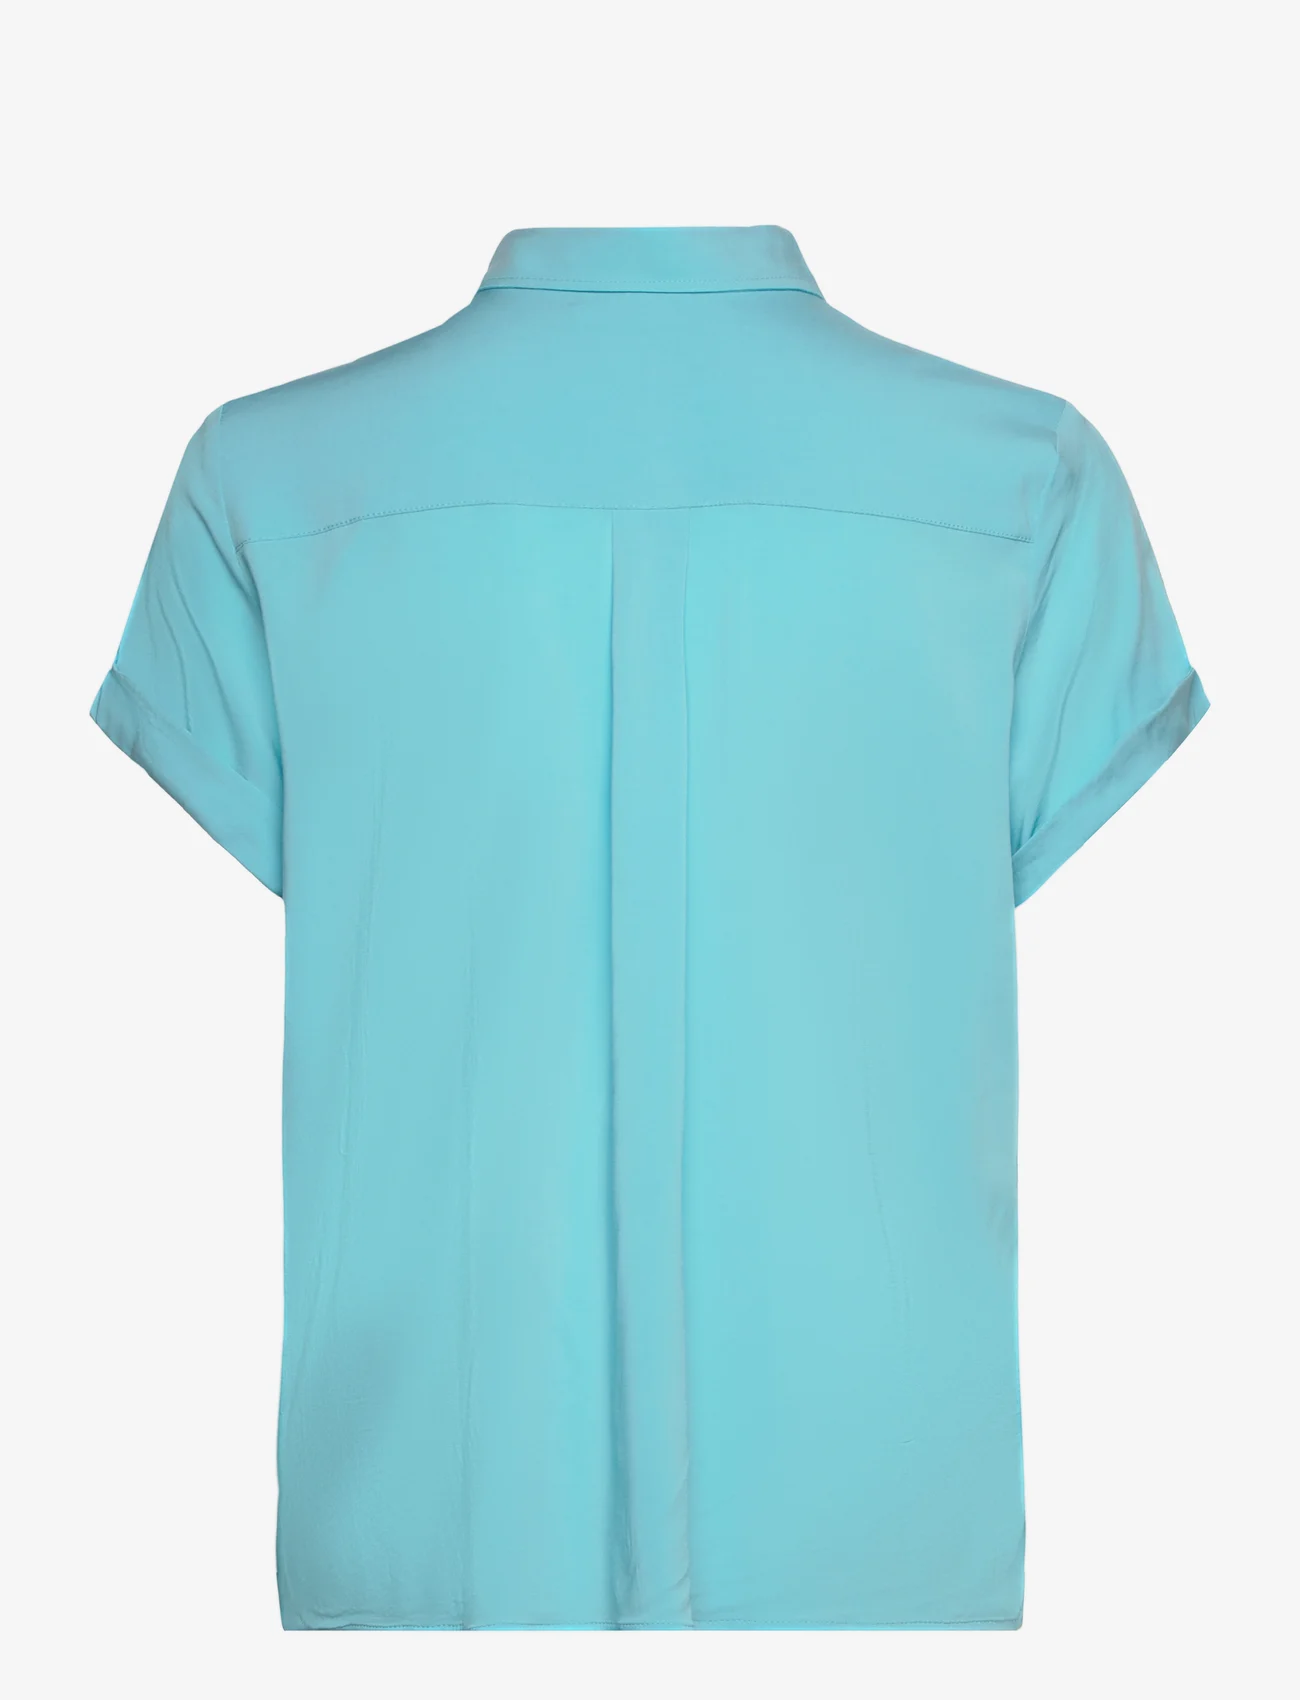 Samsøe Samsøe - Majan ss shirt 9942 - short-sleeved shirts - blue topaz - 1